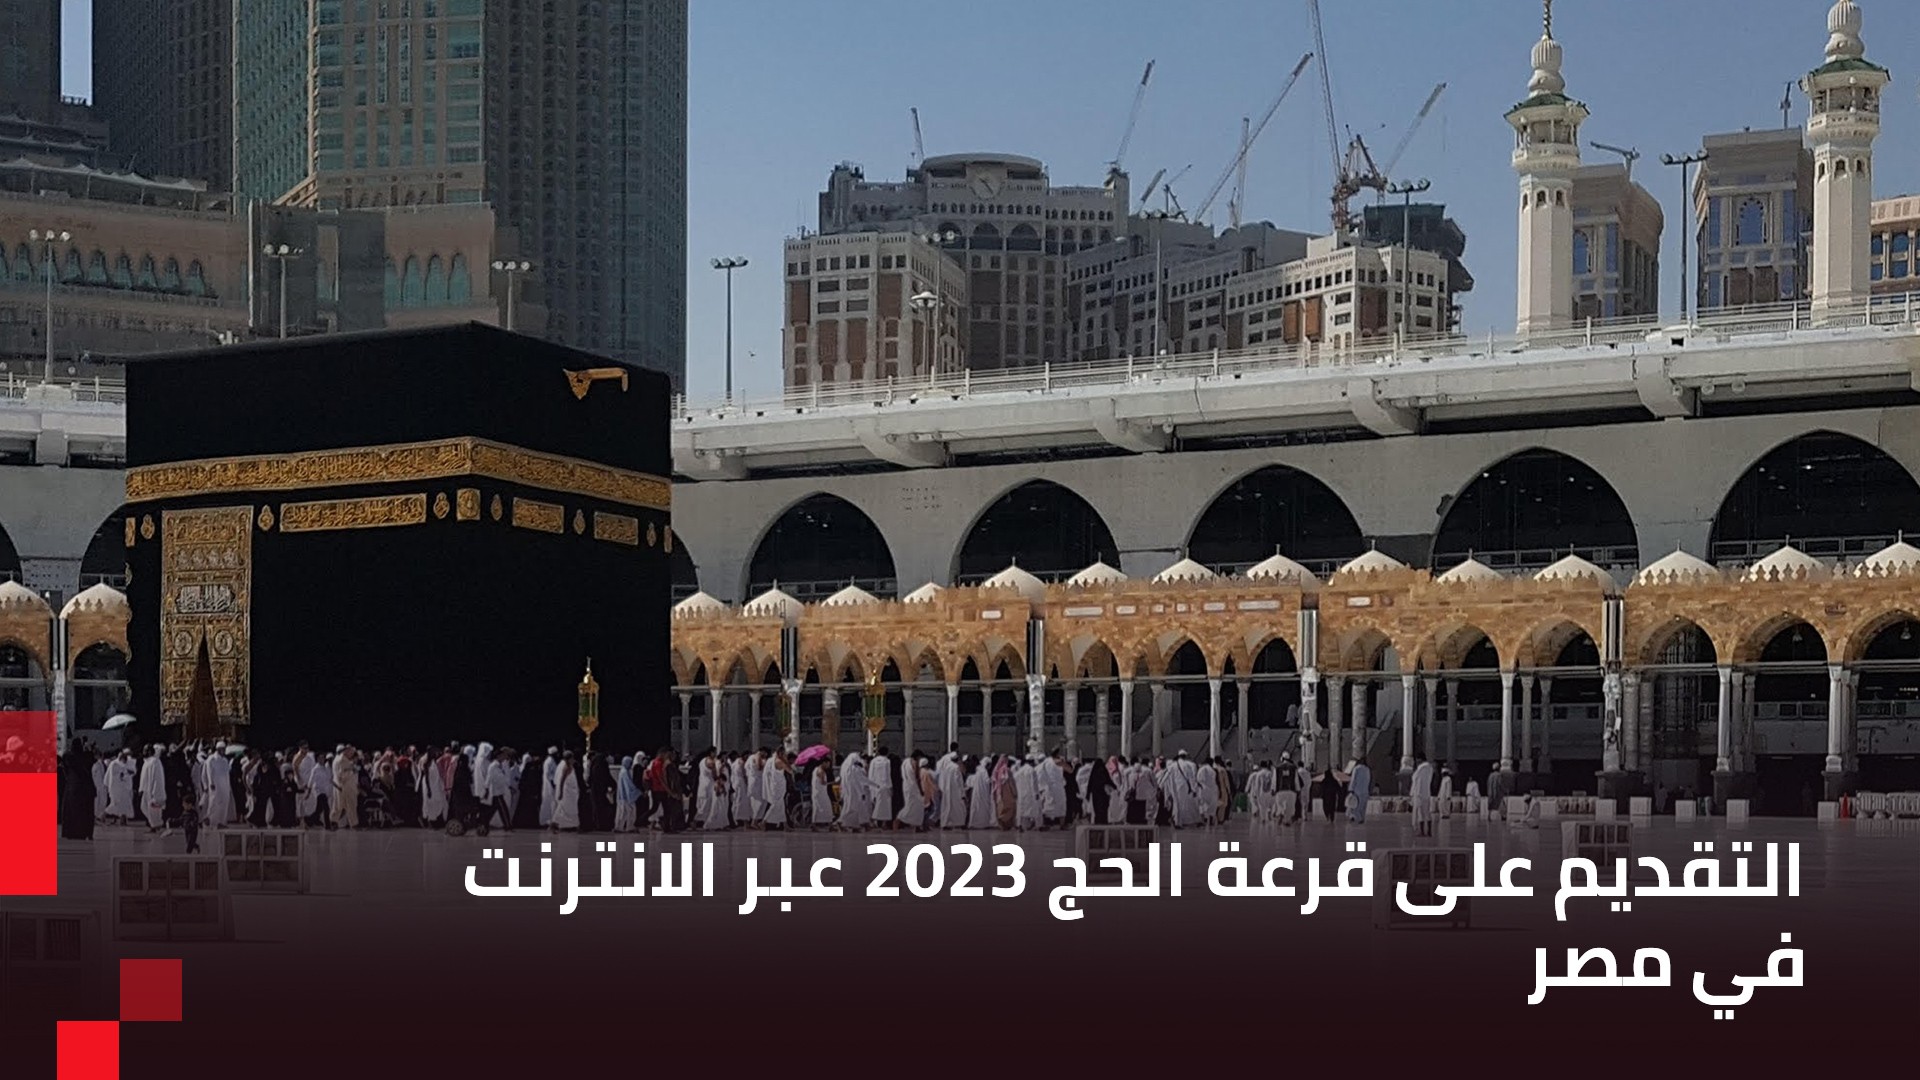 عرب هاردوير - طريقة التقديم على قرعة الحج 2023 أونلاين و بالهاتف في مصر